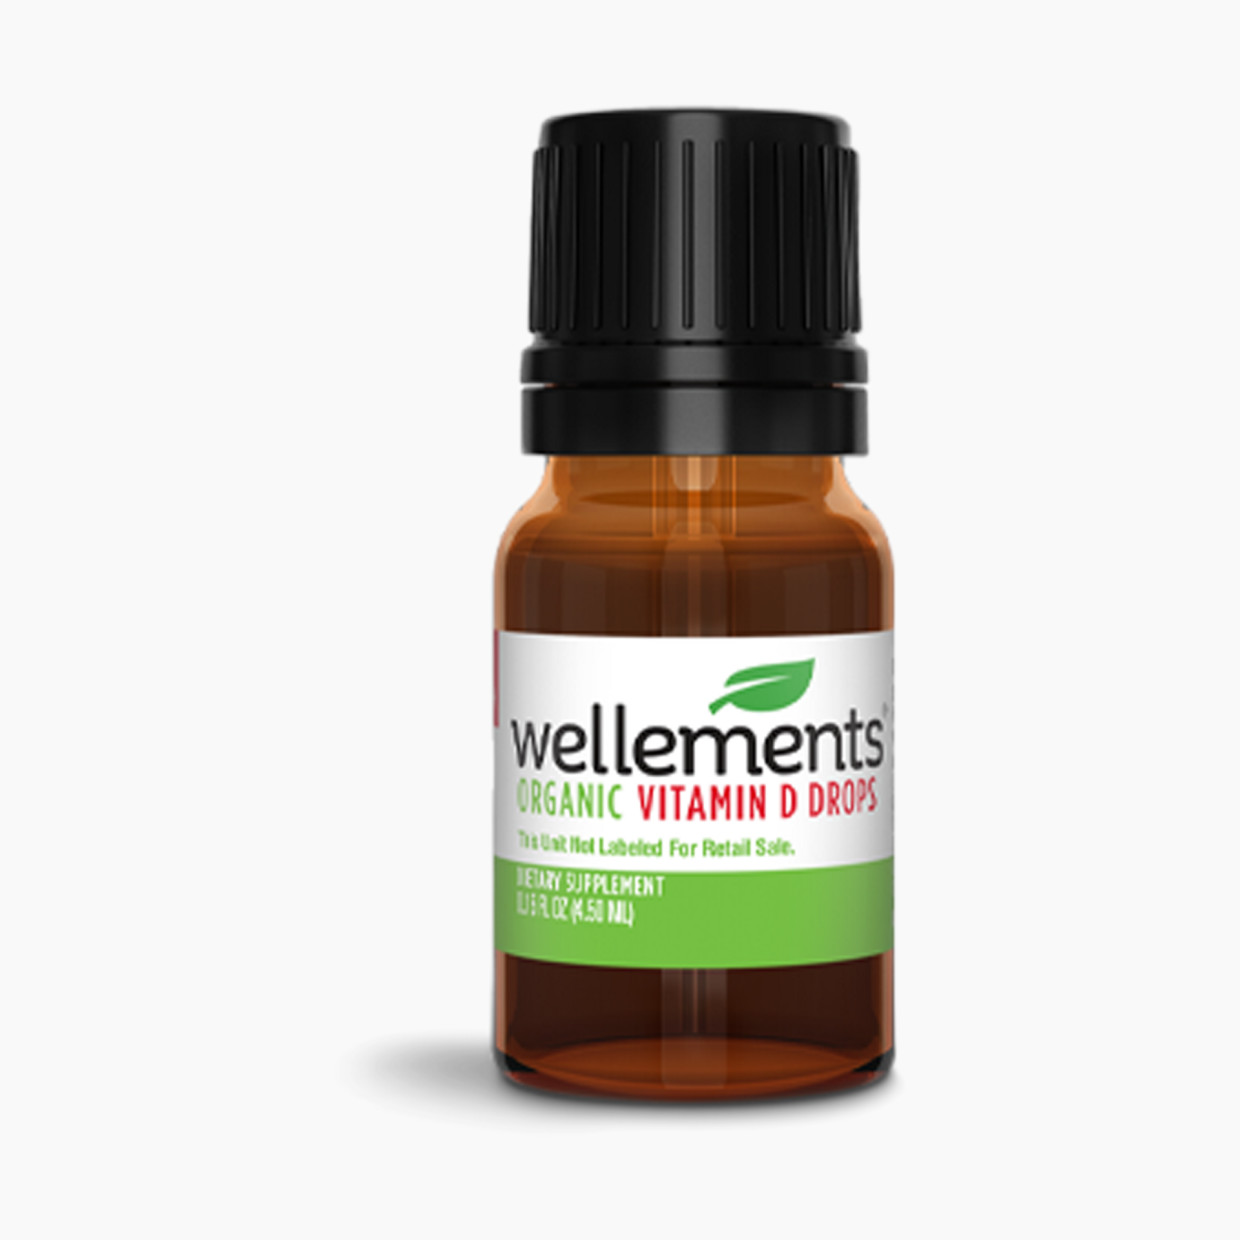 Wellements Organic Vitamin D Drops.